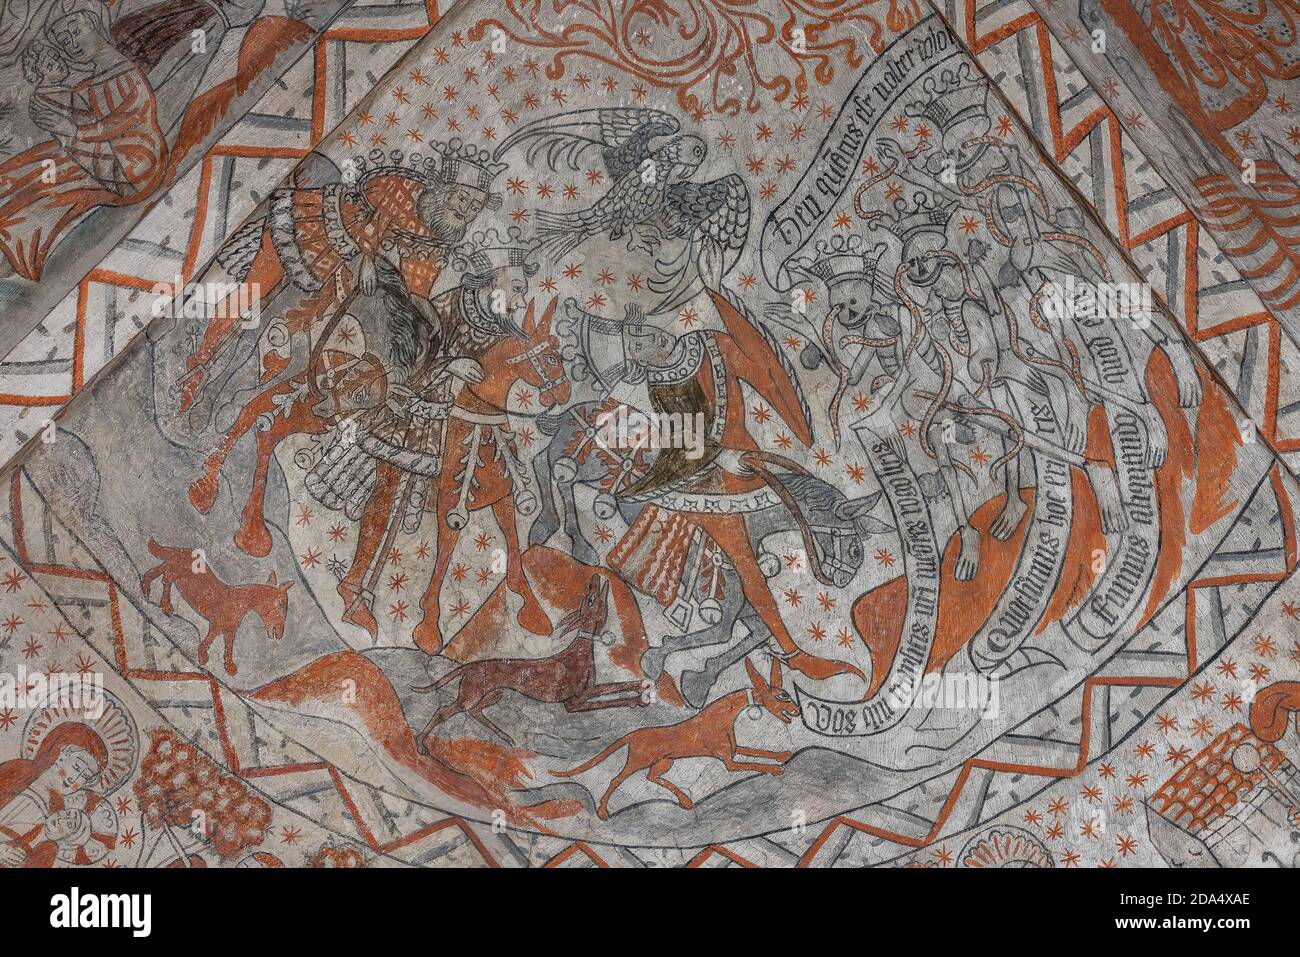 Drei Könige jagen mit Hunden und einem Falken und treffen auf drei tote Könige. Ein 500 Jahre altes Wandgemälde in der Tuse Kirche, Dänemark, 5. November 2020 Stockfoto